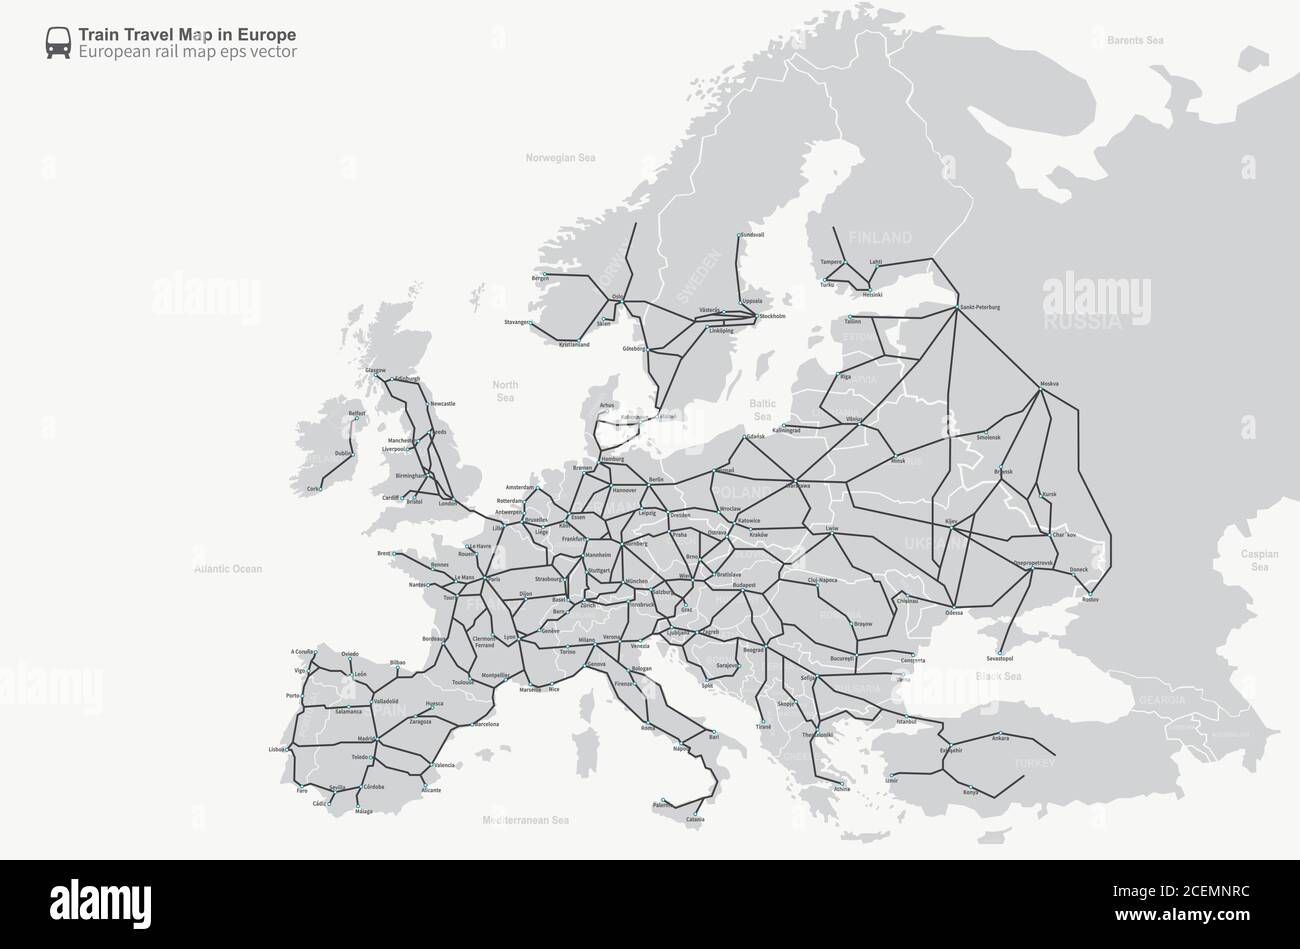 Infographie sur les pays européens et le système ferroviaire Illustration de Vecteur